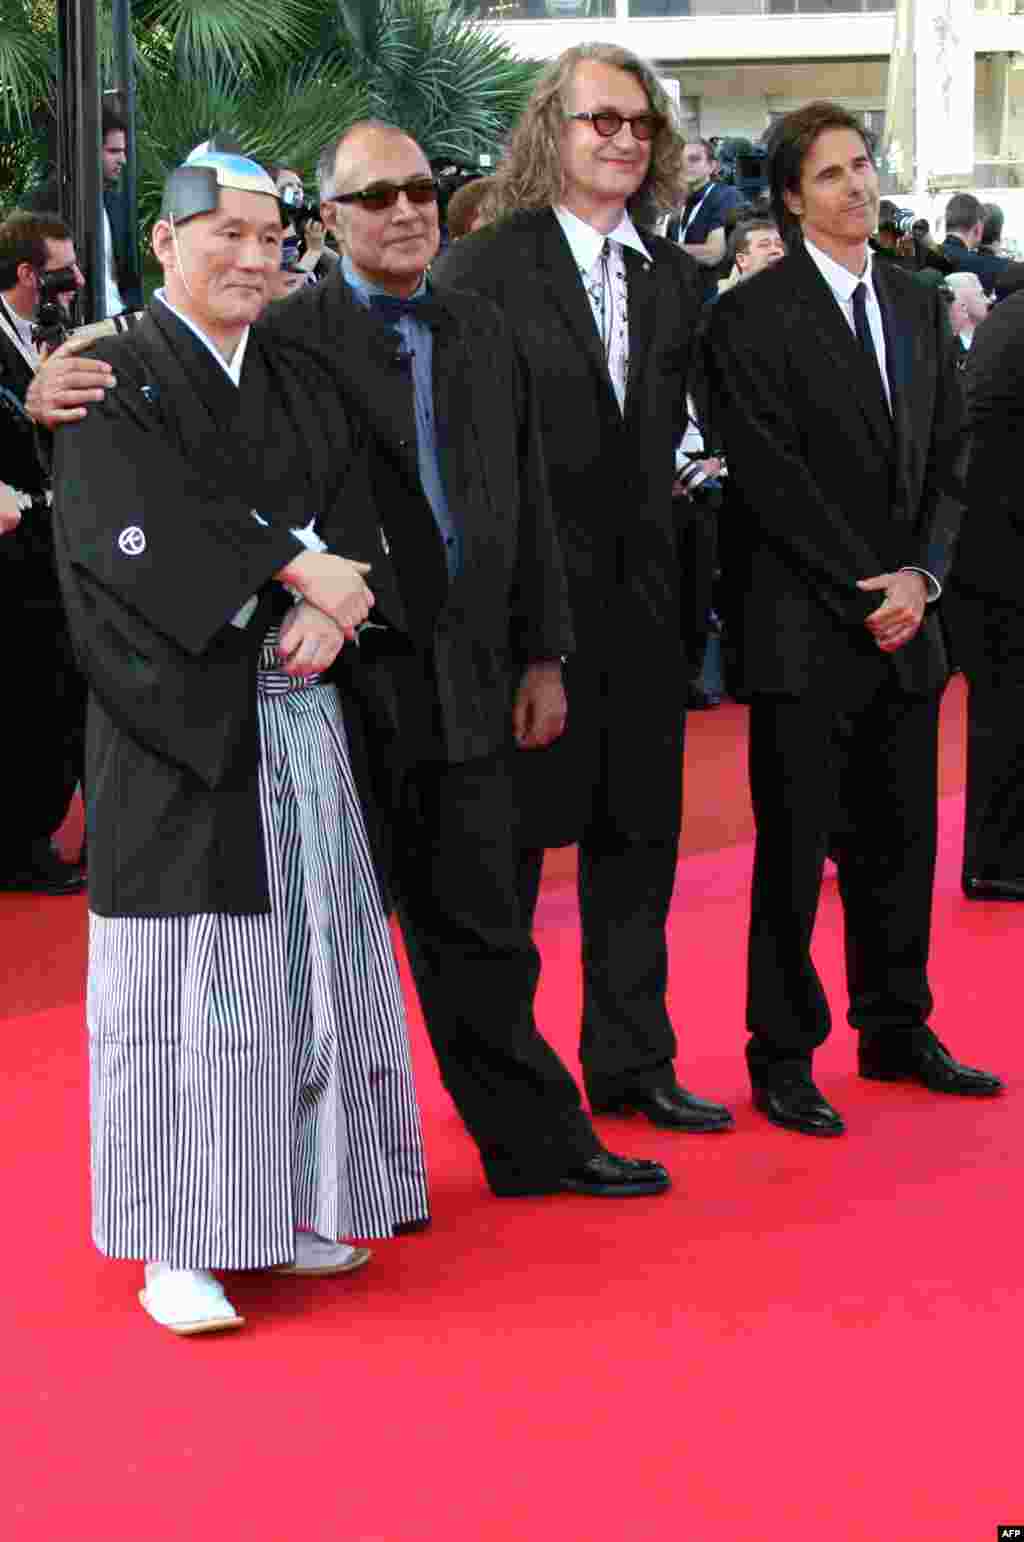 کارگردان ایرانی در کنار ویم وندرس، والتر سالس، کارگردان برزیلی و تاکاشی کیتانو، کارگردان و بازیگر مشهور ژاپنی در ماه مه سال ۲۰۰۷ میلادی. در آن سال مجموعه&zwnj;ای از آثار این سینماگران نام&zwnj;آور در فیلمی با عنوان &laquo;هرکس سینمای خودش&raquo; به نمایش درآمد. این مجموعه به مناسبت ۶۰مین سالگرد جشنواره کن ساخته شد و فیلم&zwnj;هایی از پنج قاره را در بر می&zwnj;گیرد. کیارستمی در کنار ۳۶ کارگردان سراسر جهان بود که امضایش بر این مجموعه نشست. 